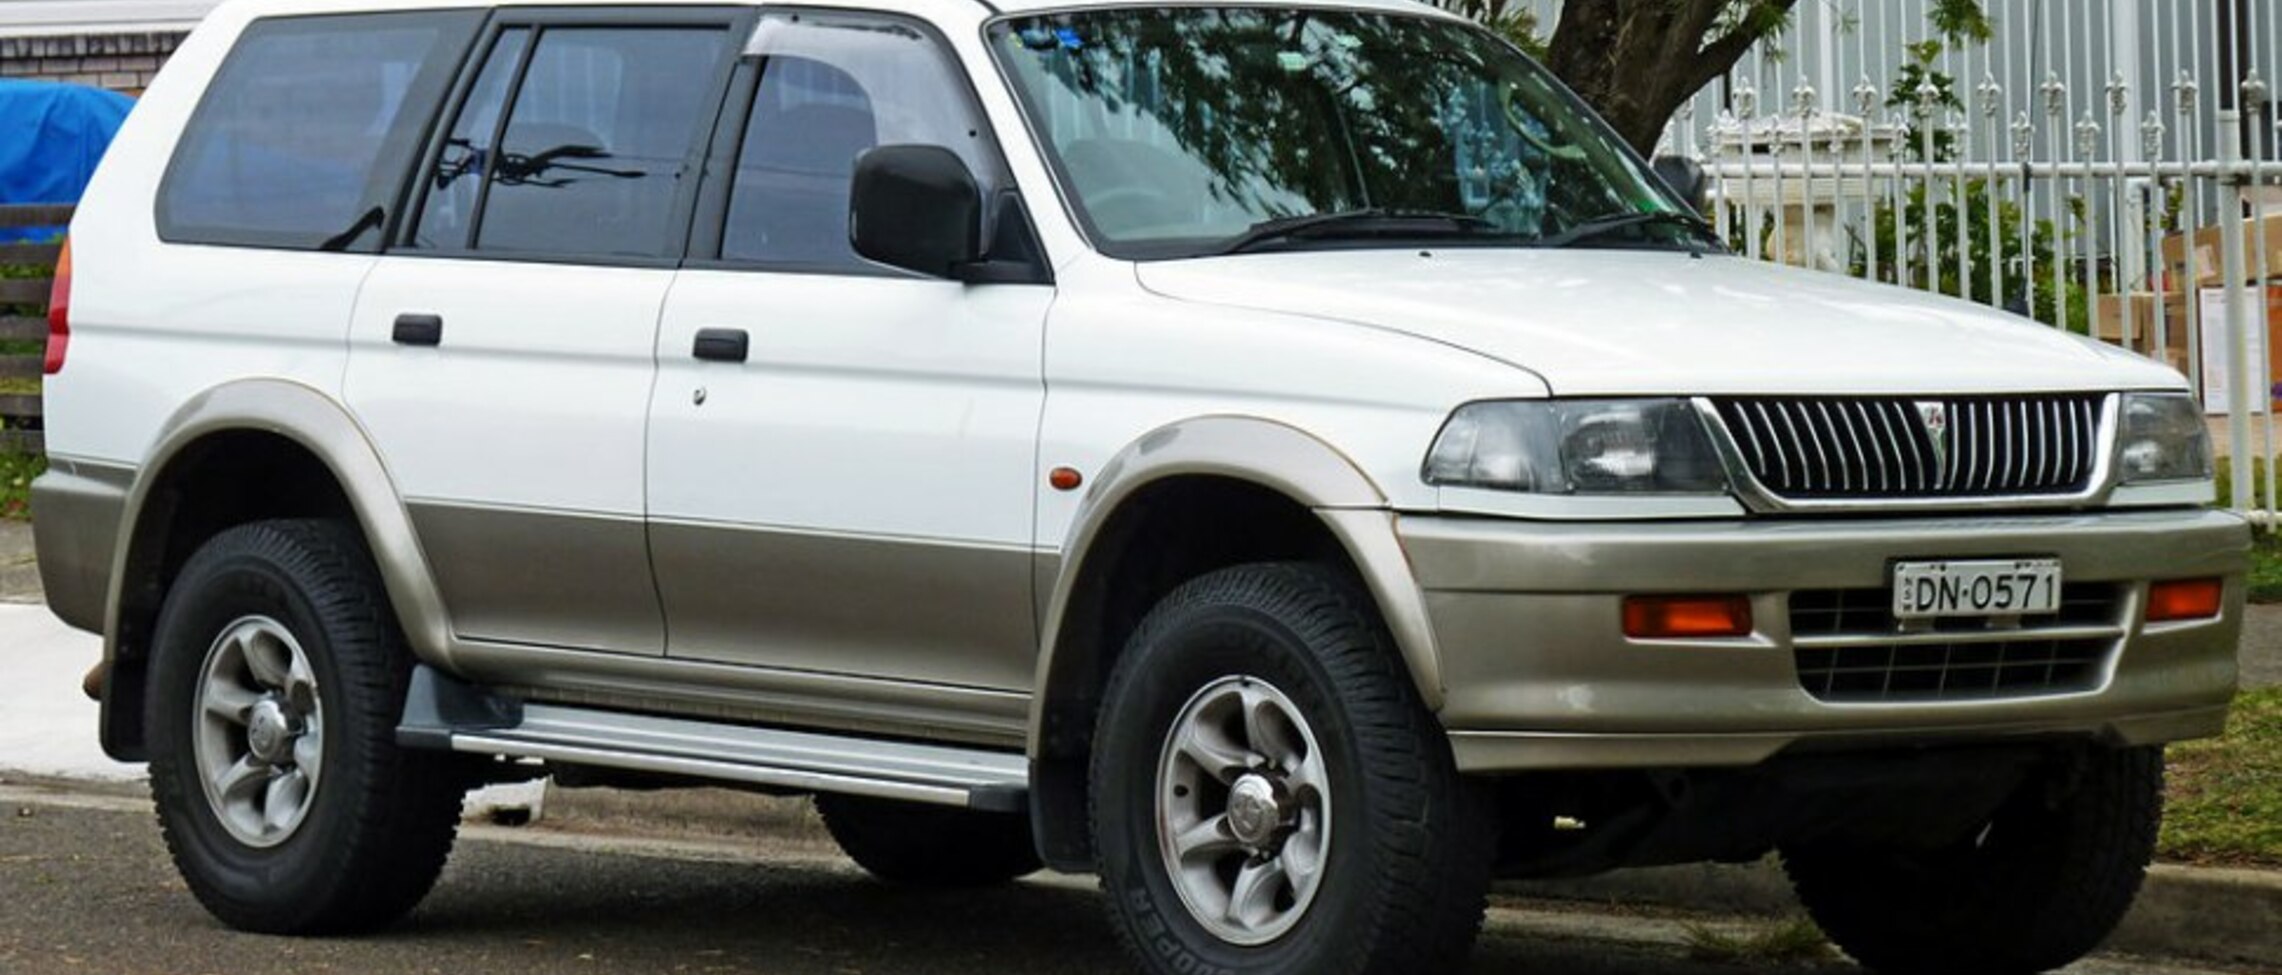 Mitsubishi Challenger (W) 2.8 TD (140 Hp) 1996, 1997, 1998, 1999, 2000, 2001 